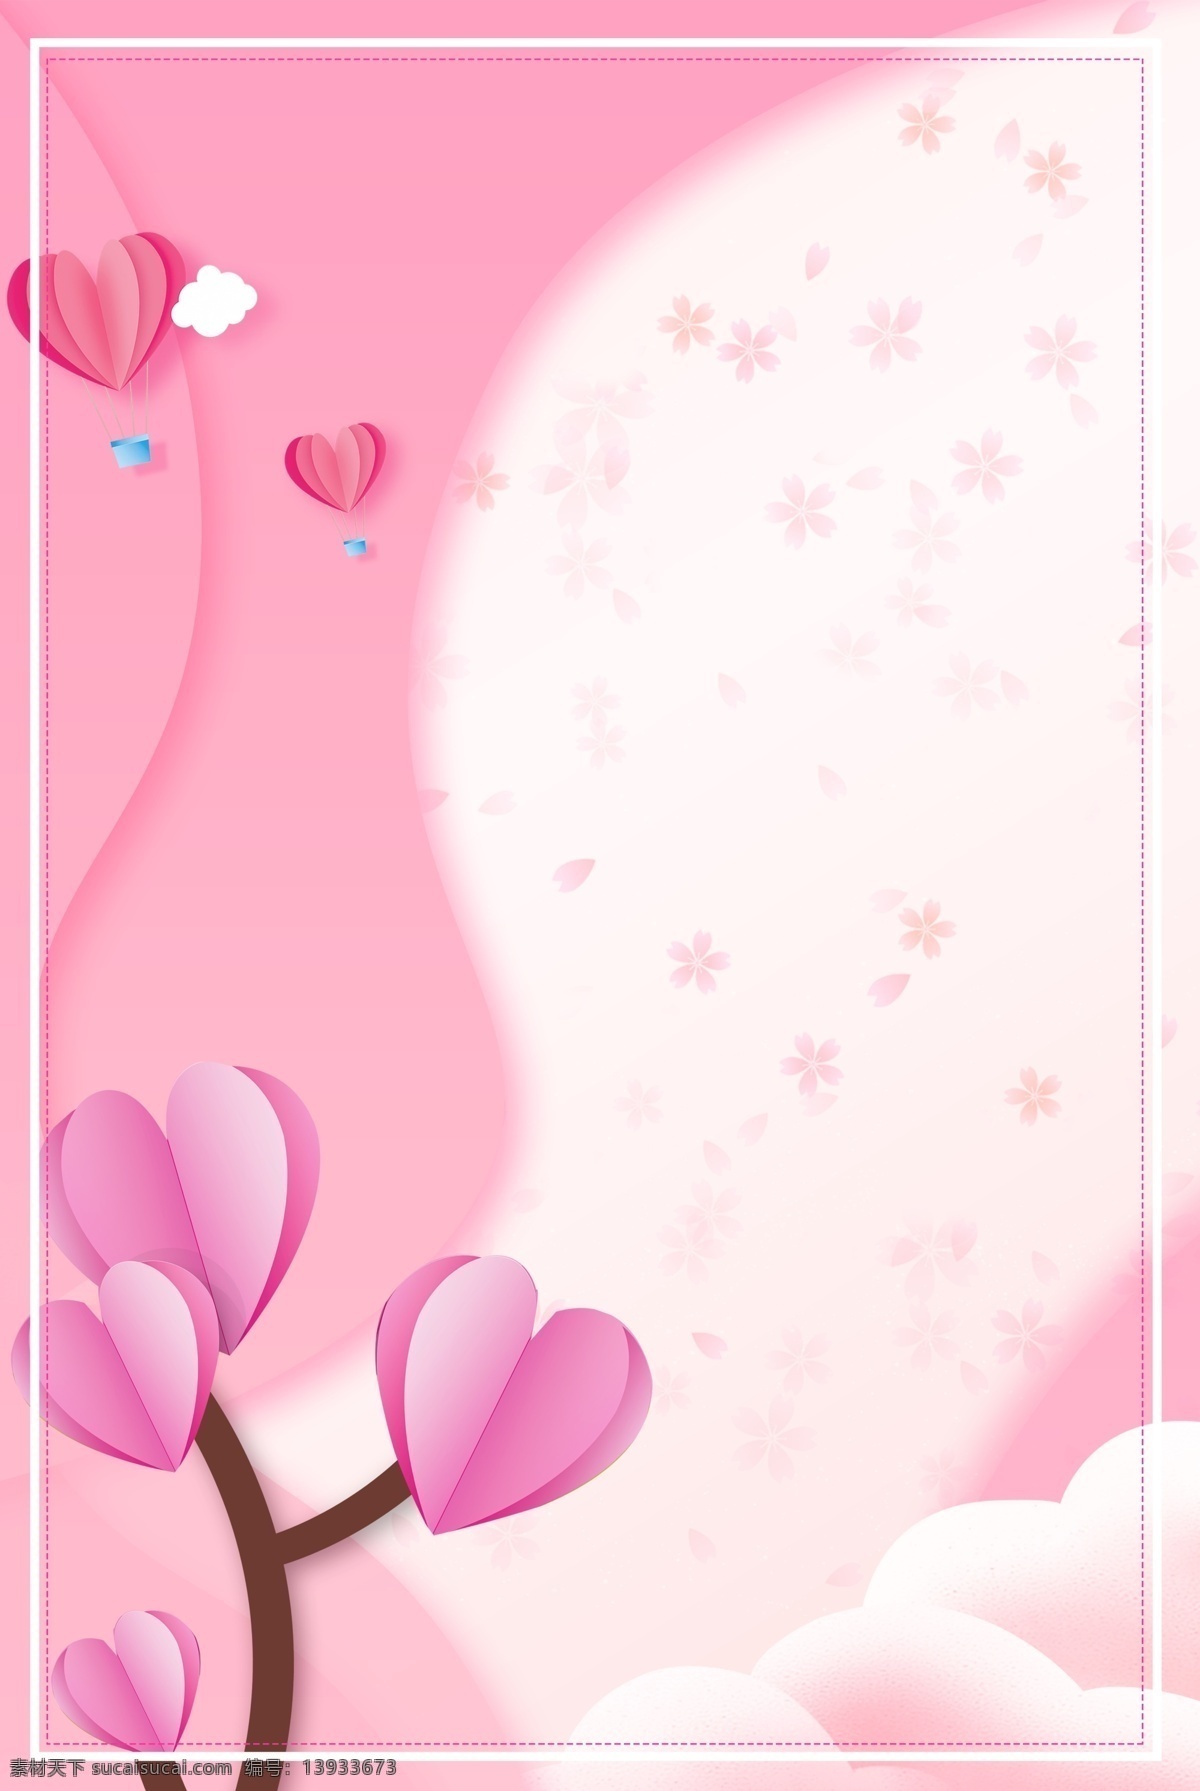 小 清新 214 情人节 爱 心树 折纸 背景 小清新 爱心树 粉色 唯美 2月14日 约惠 爱心